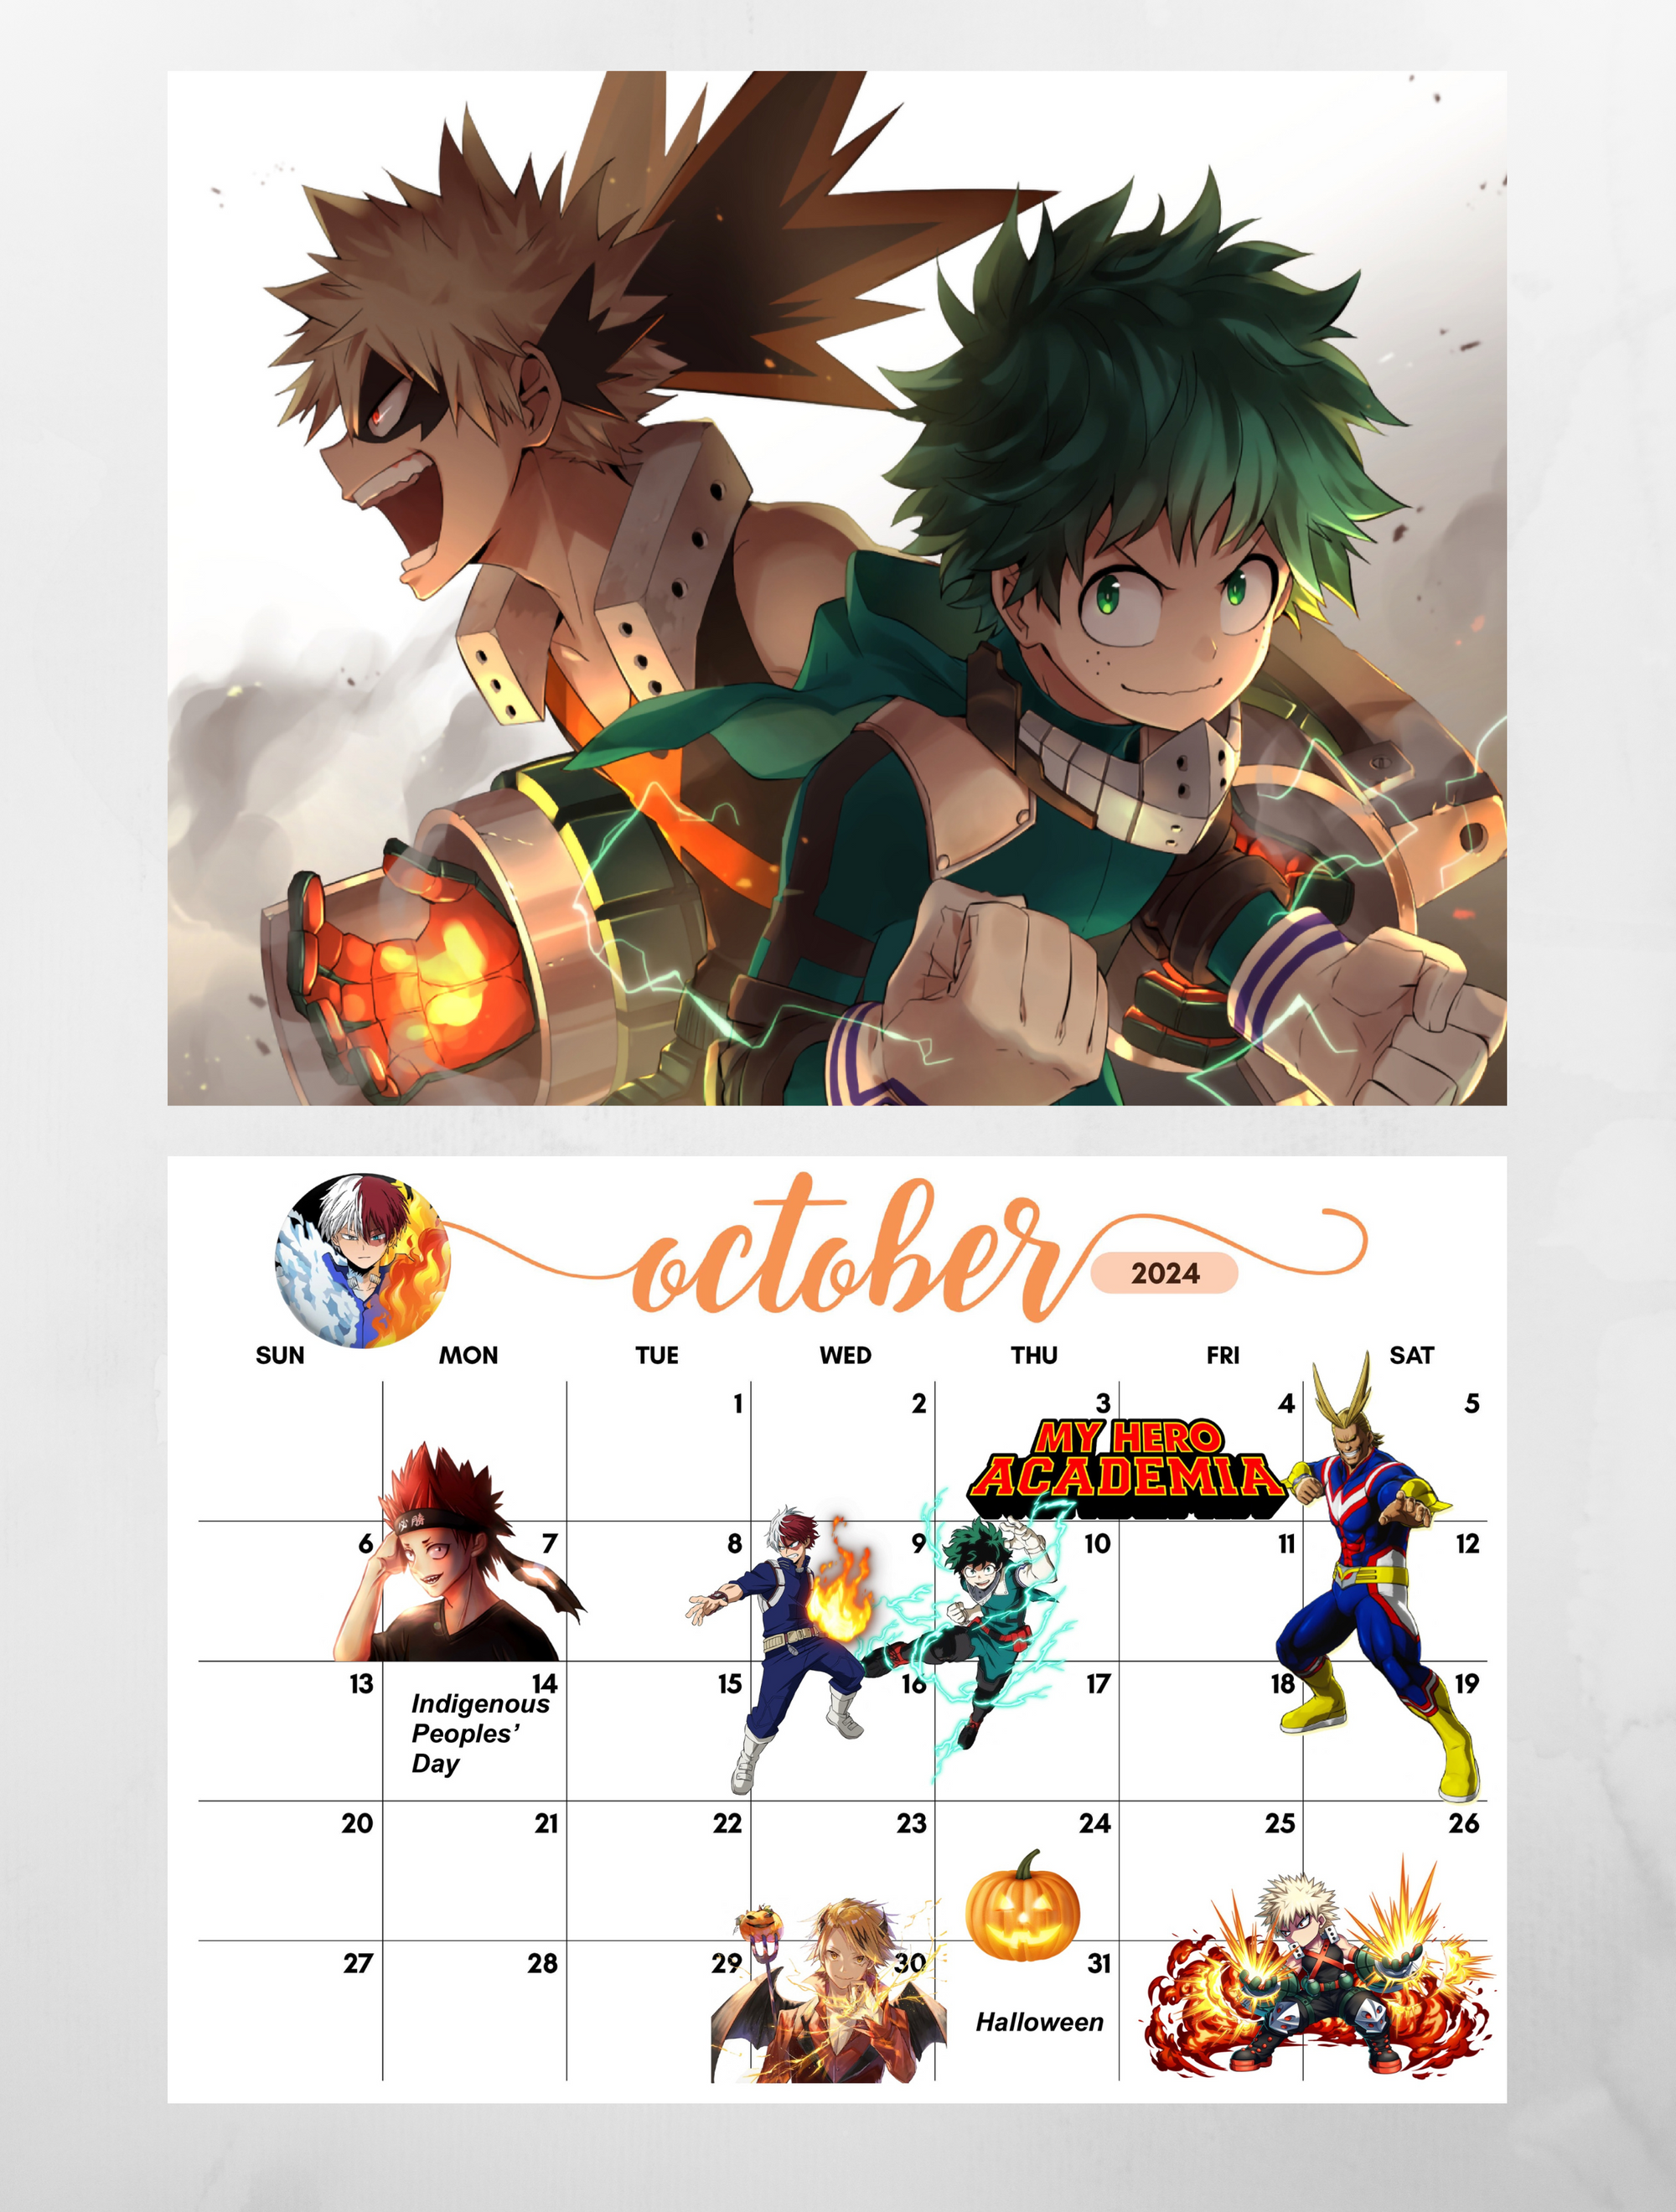 Kinokuniya USA - 2021 Anime Calendars are available at... | Facebook